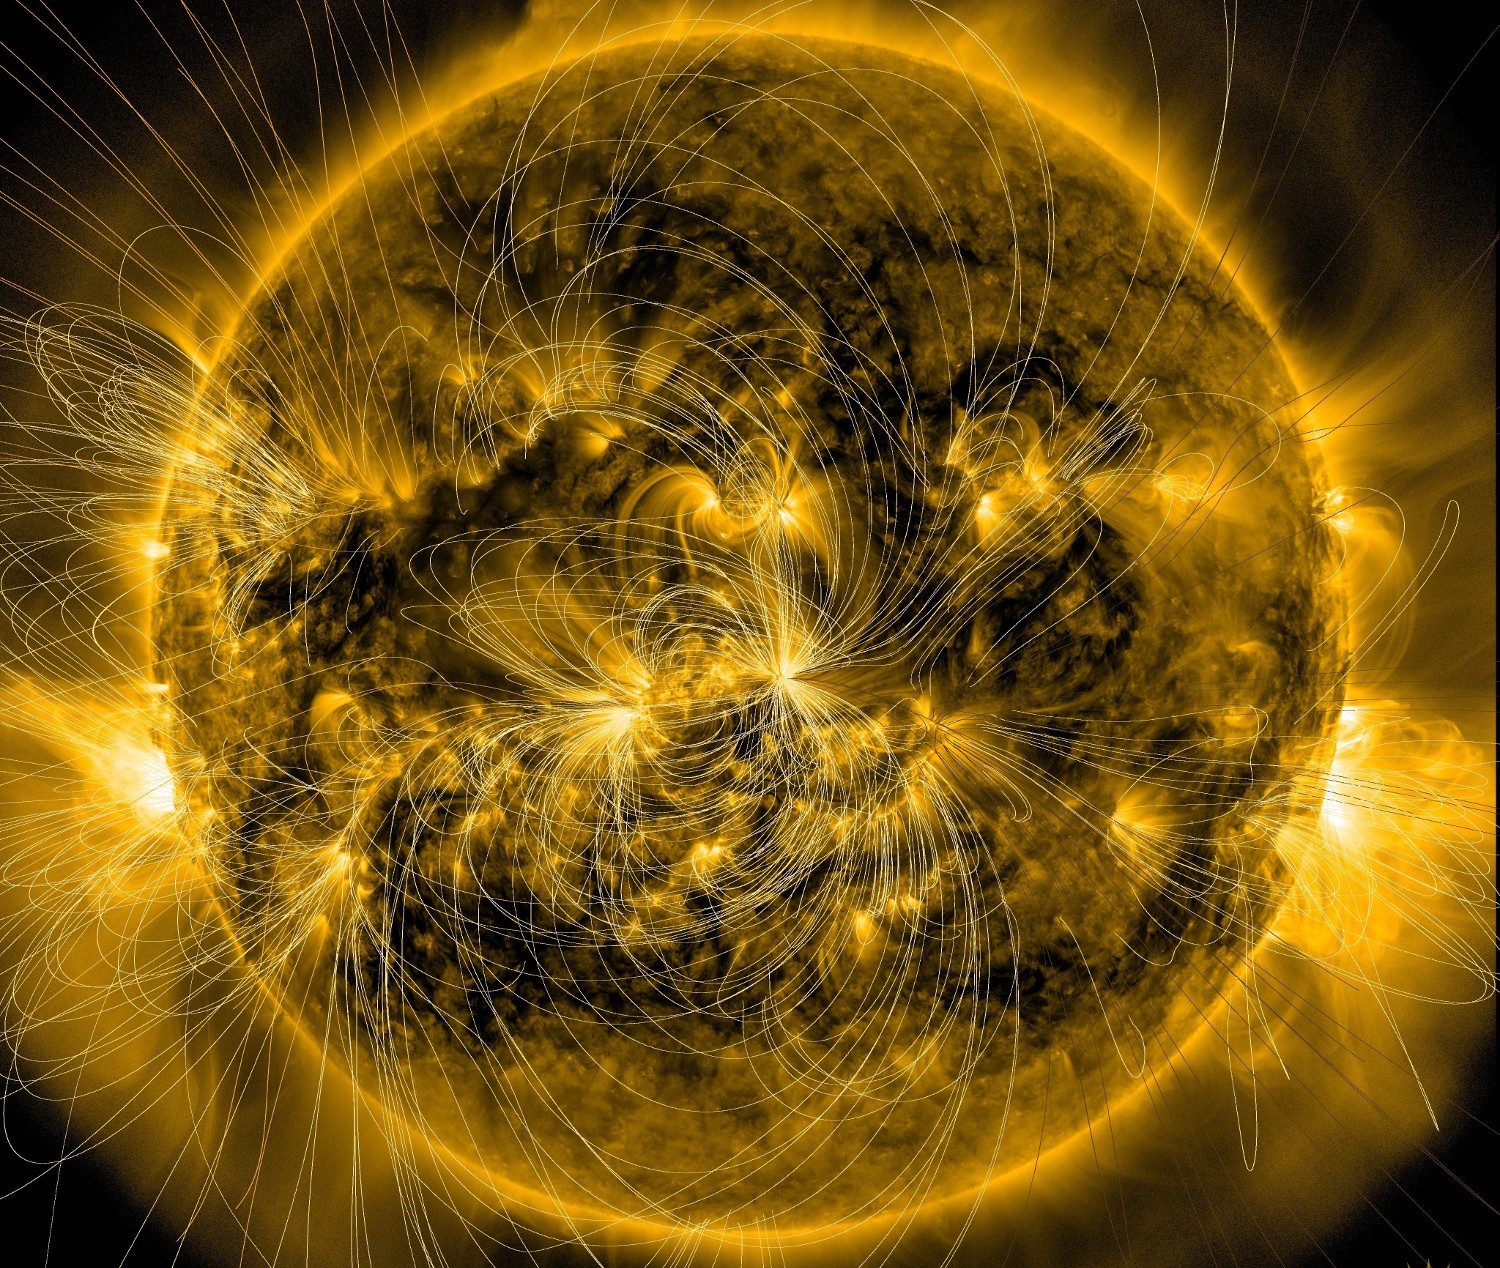 NASA divulga mapa magnético do Sol - Revista Galileu | Ciência